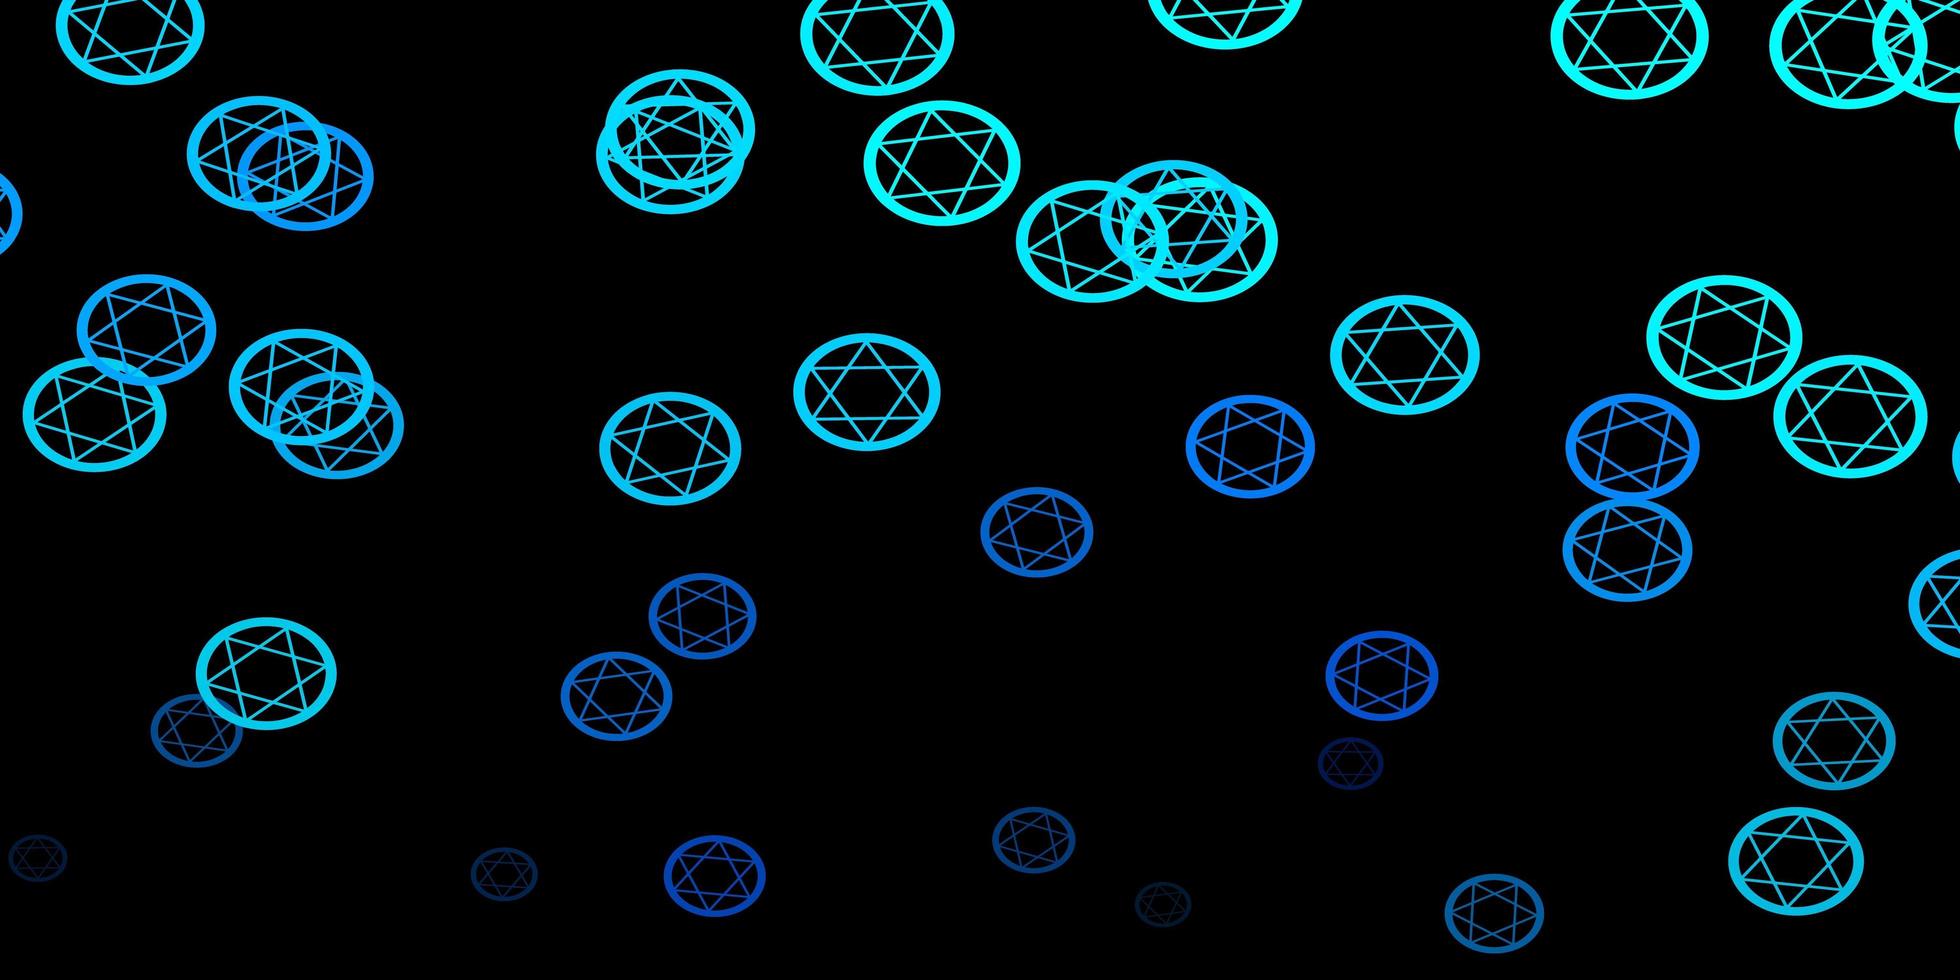 Telón de fondo de vector azul oscuro con símbolos de misterio.